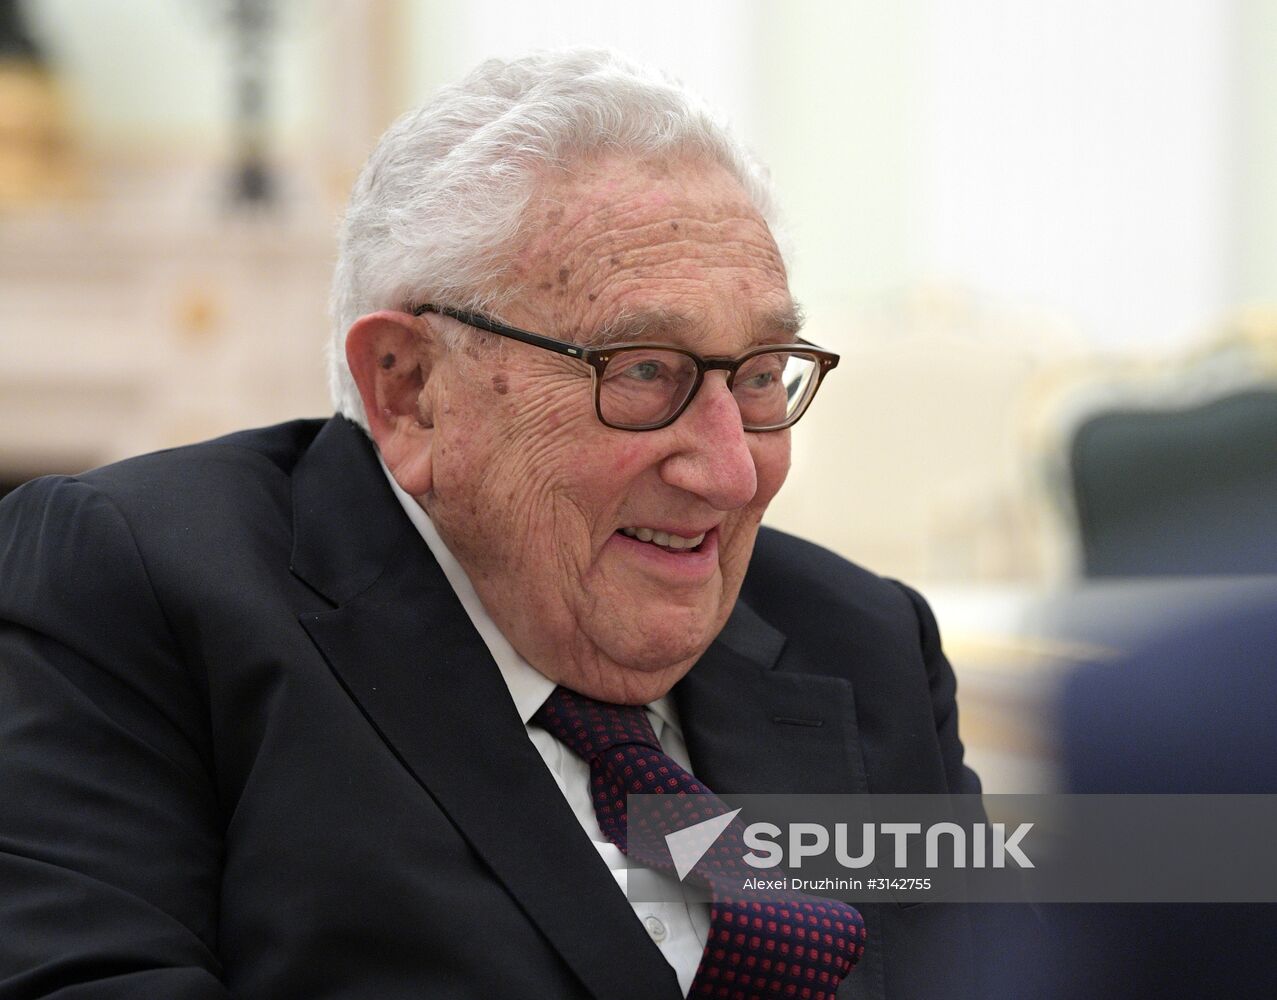 President Vladimir Putin meets with former US Secretary of State Henry Kissinger